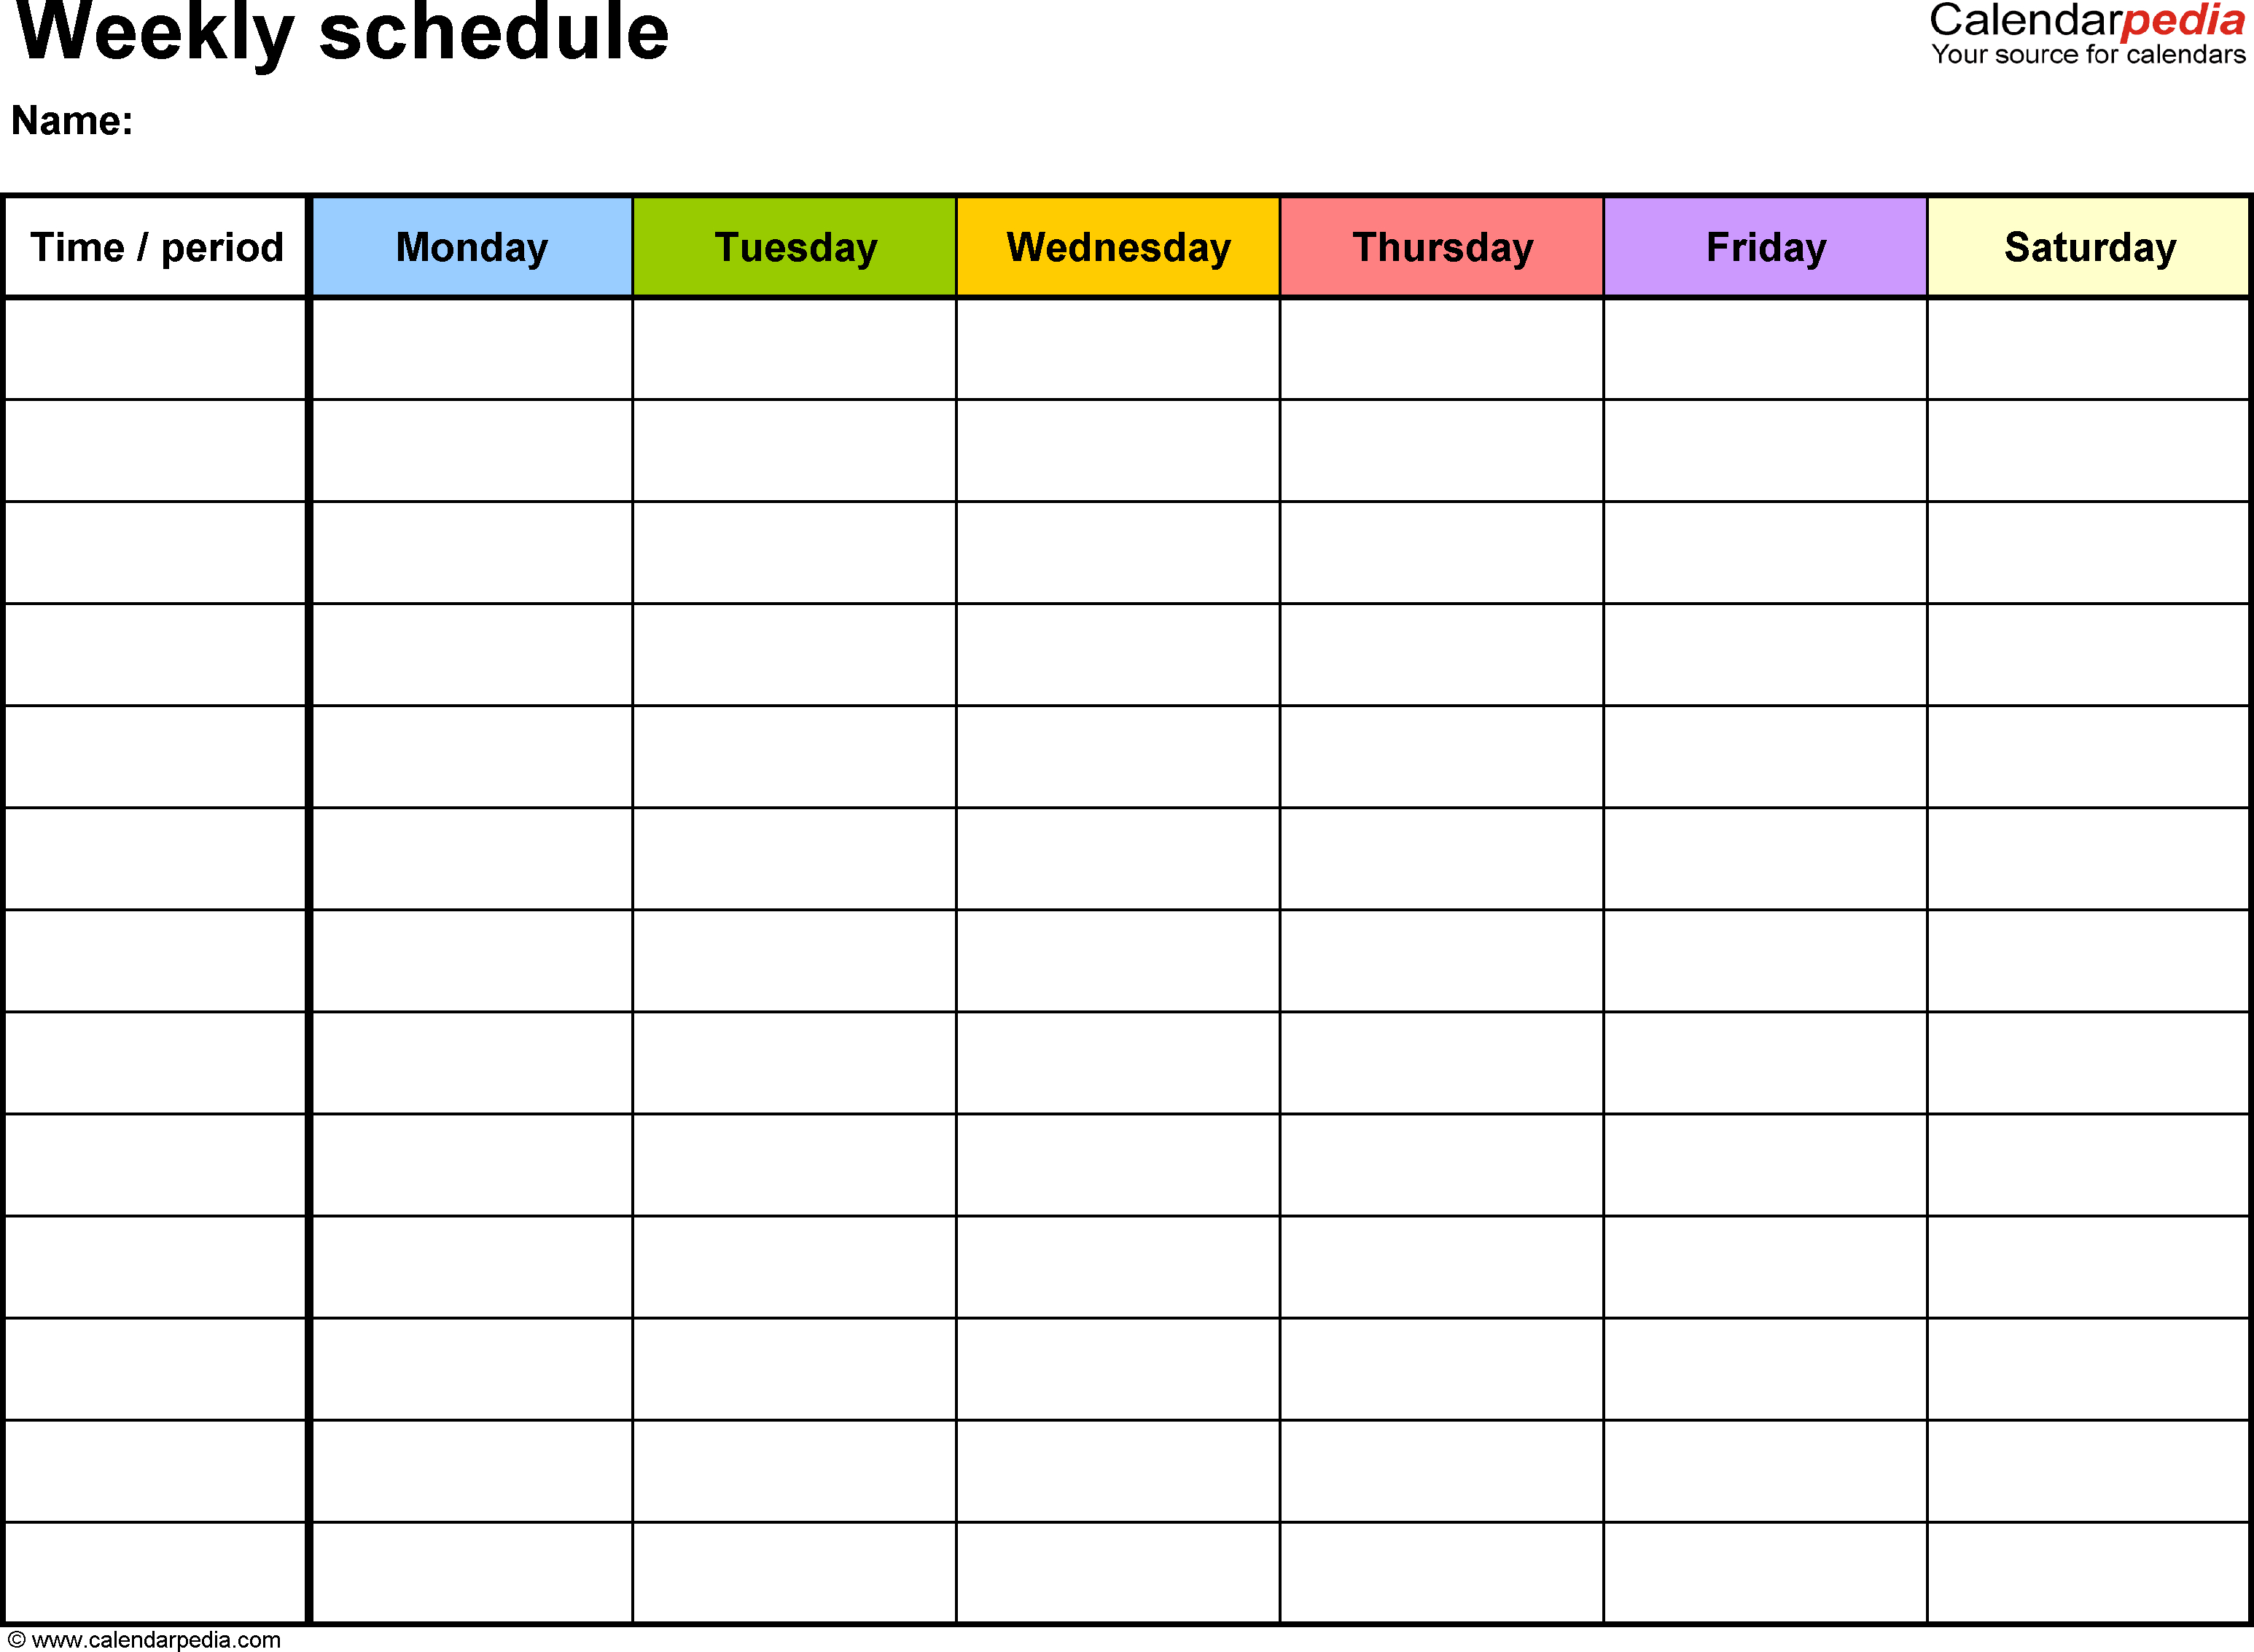 Weekly+Schedule+Template | Weekly Calendar Template with Weekly Calendar With Time Slots